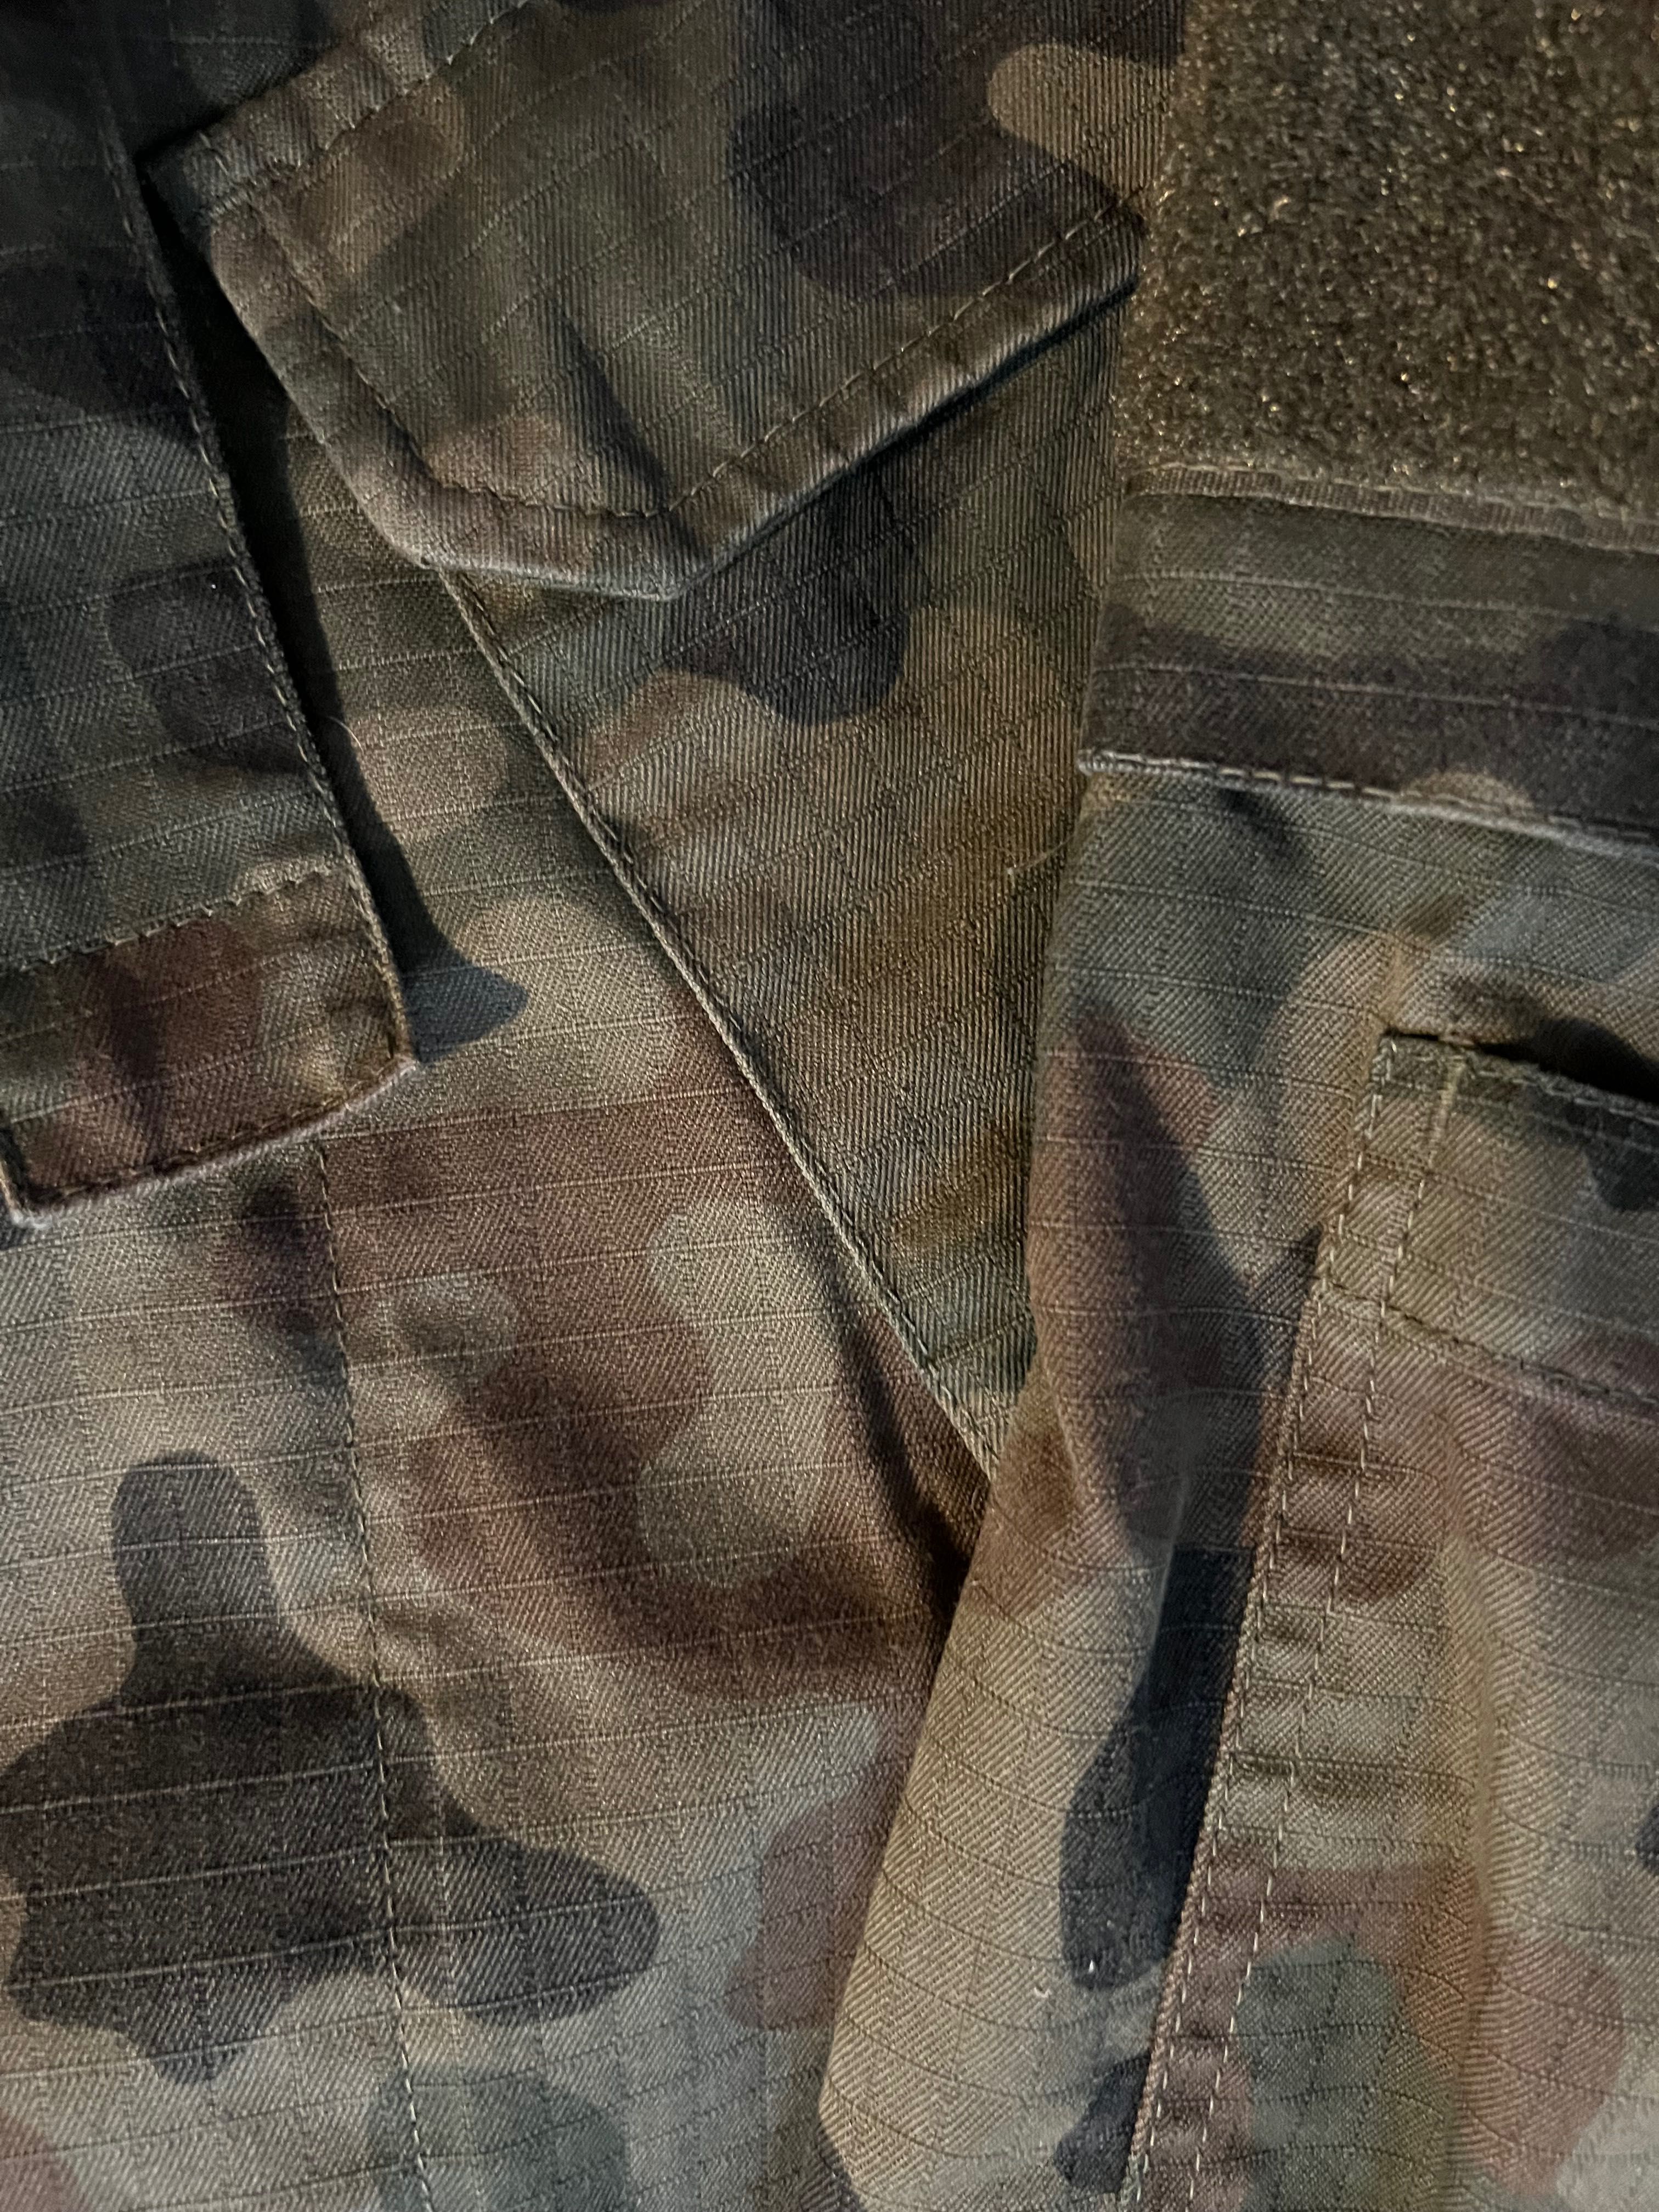 Bluza polowa, wojskowa, rozmiar S/R, wzór 124P/MON